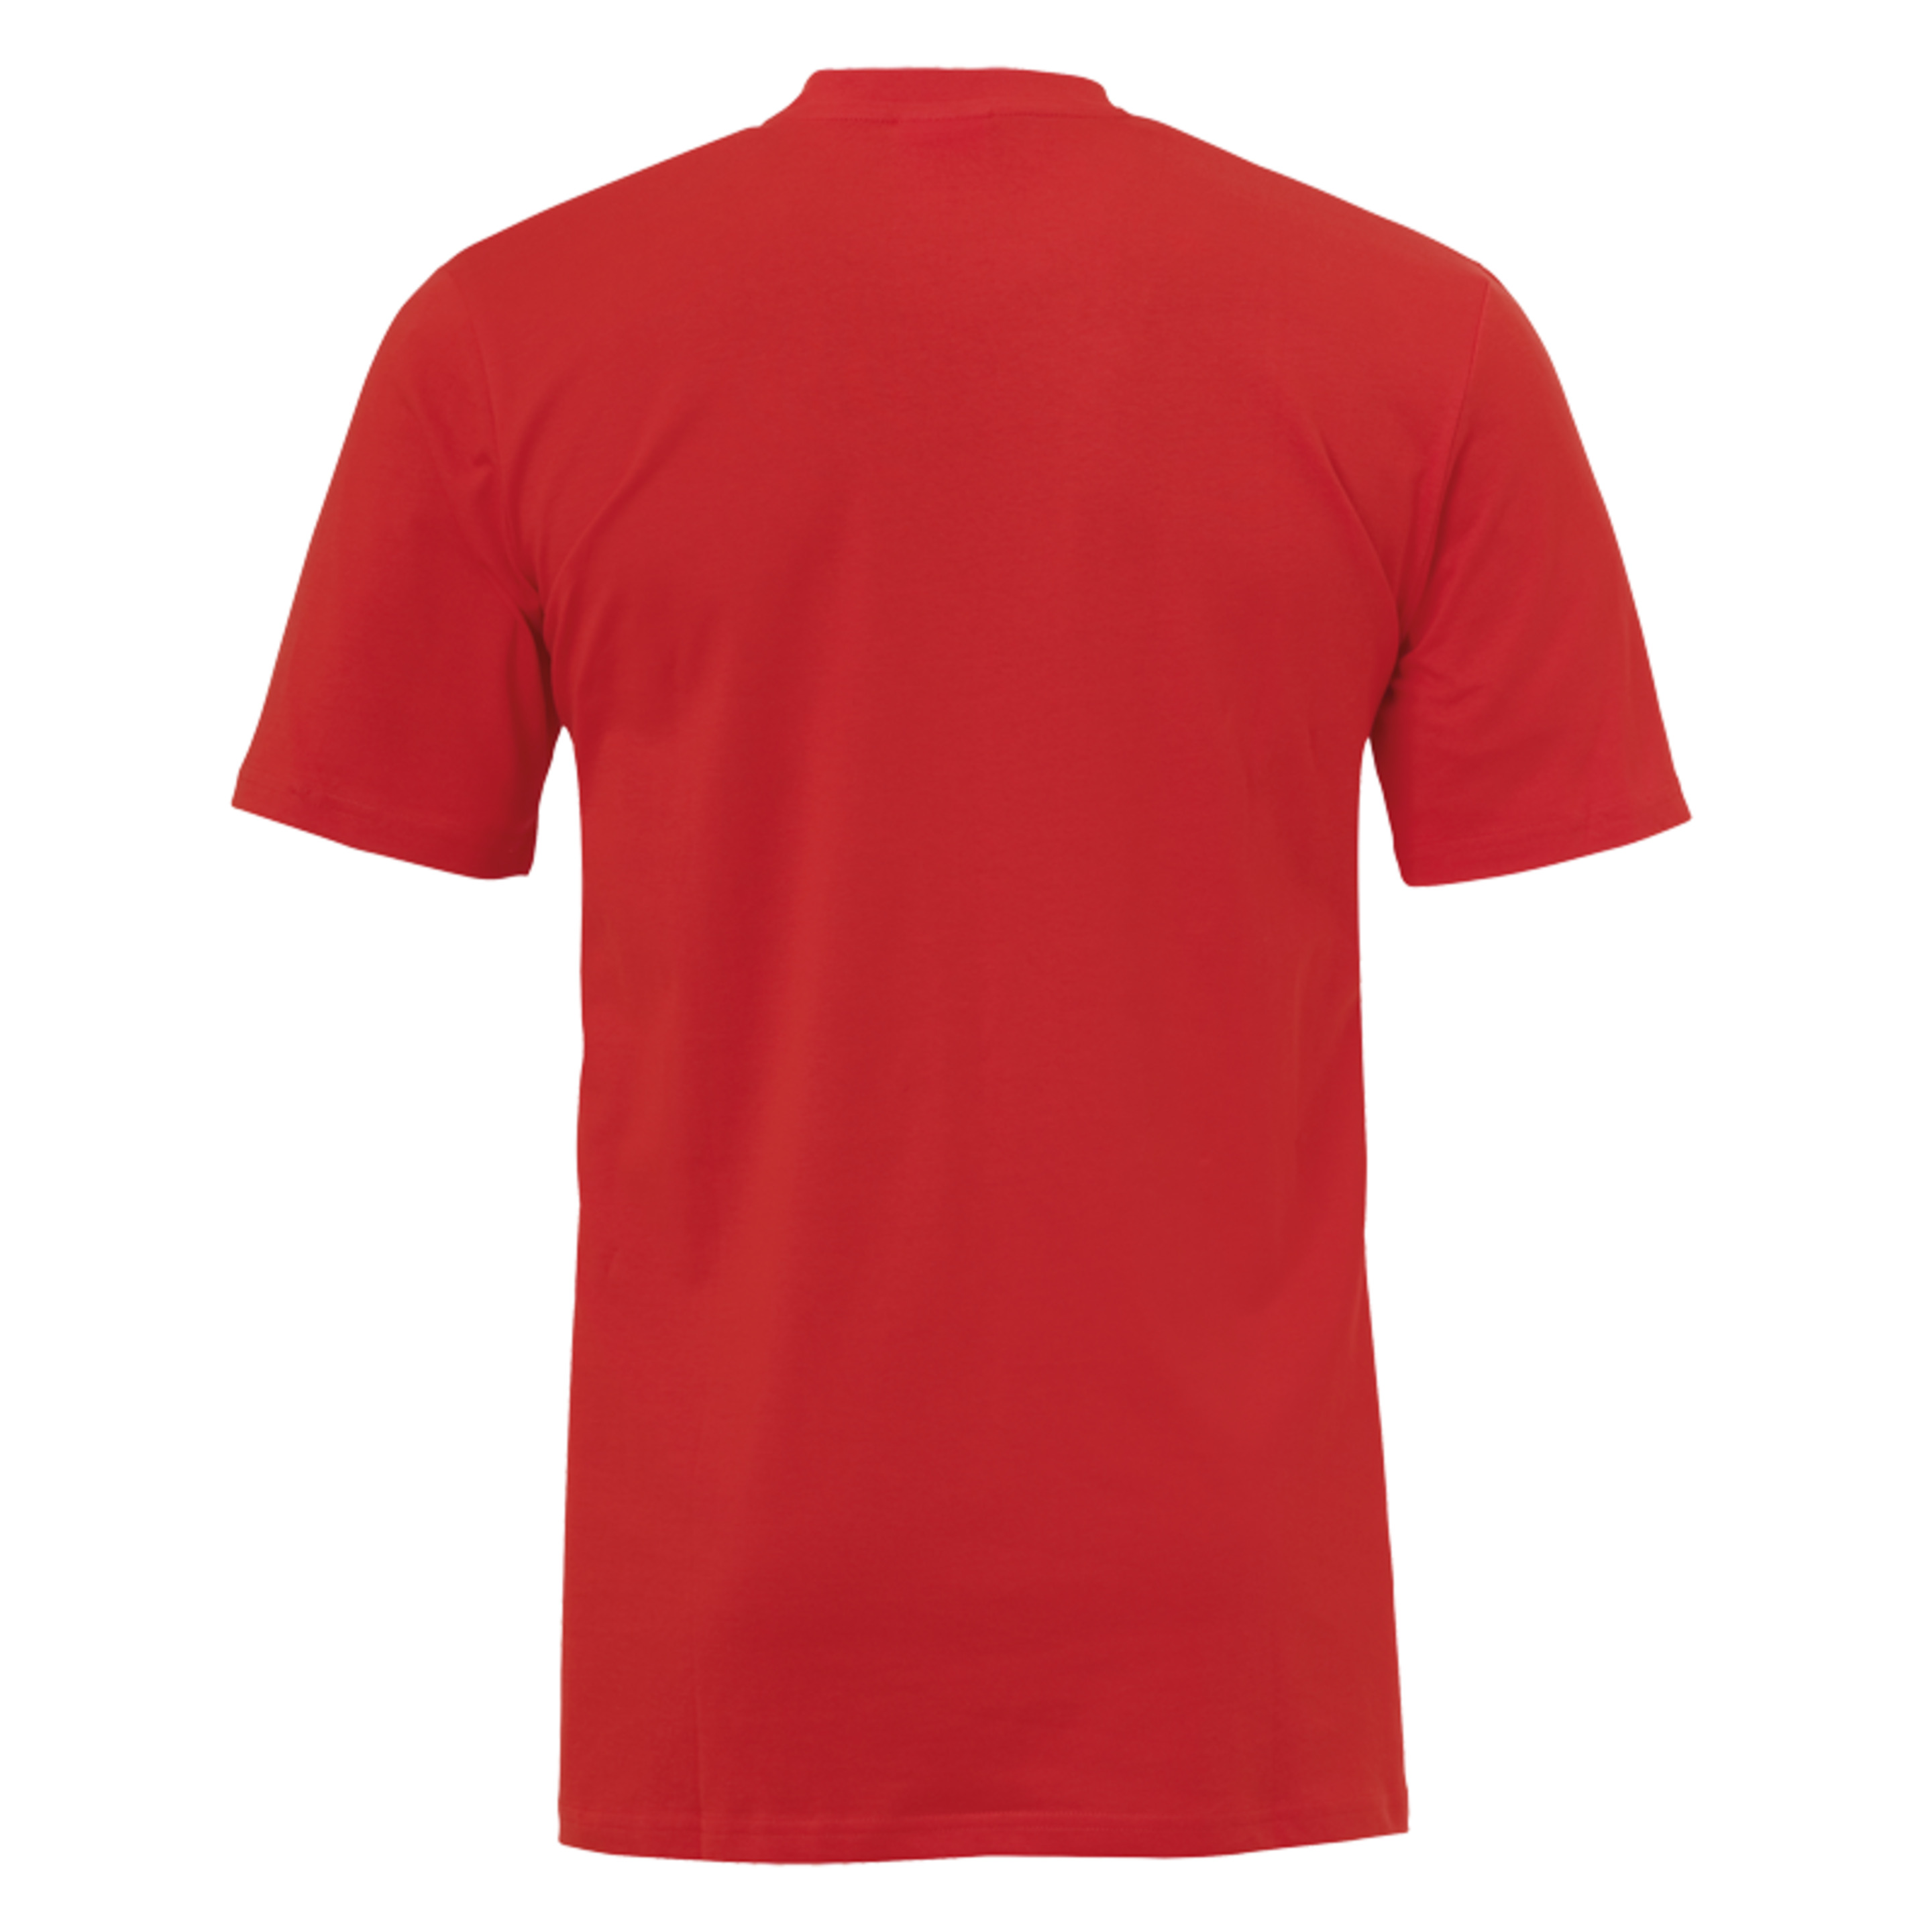 Liga 2.0 Camiseta De Entrenamiento Rojo/blanco Uhlsport - blanco_rojo - Liga 2.0 Camiseta De Entrenamiento Rojo/blanco Uhlsport  MKP